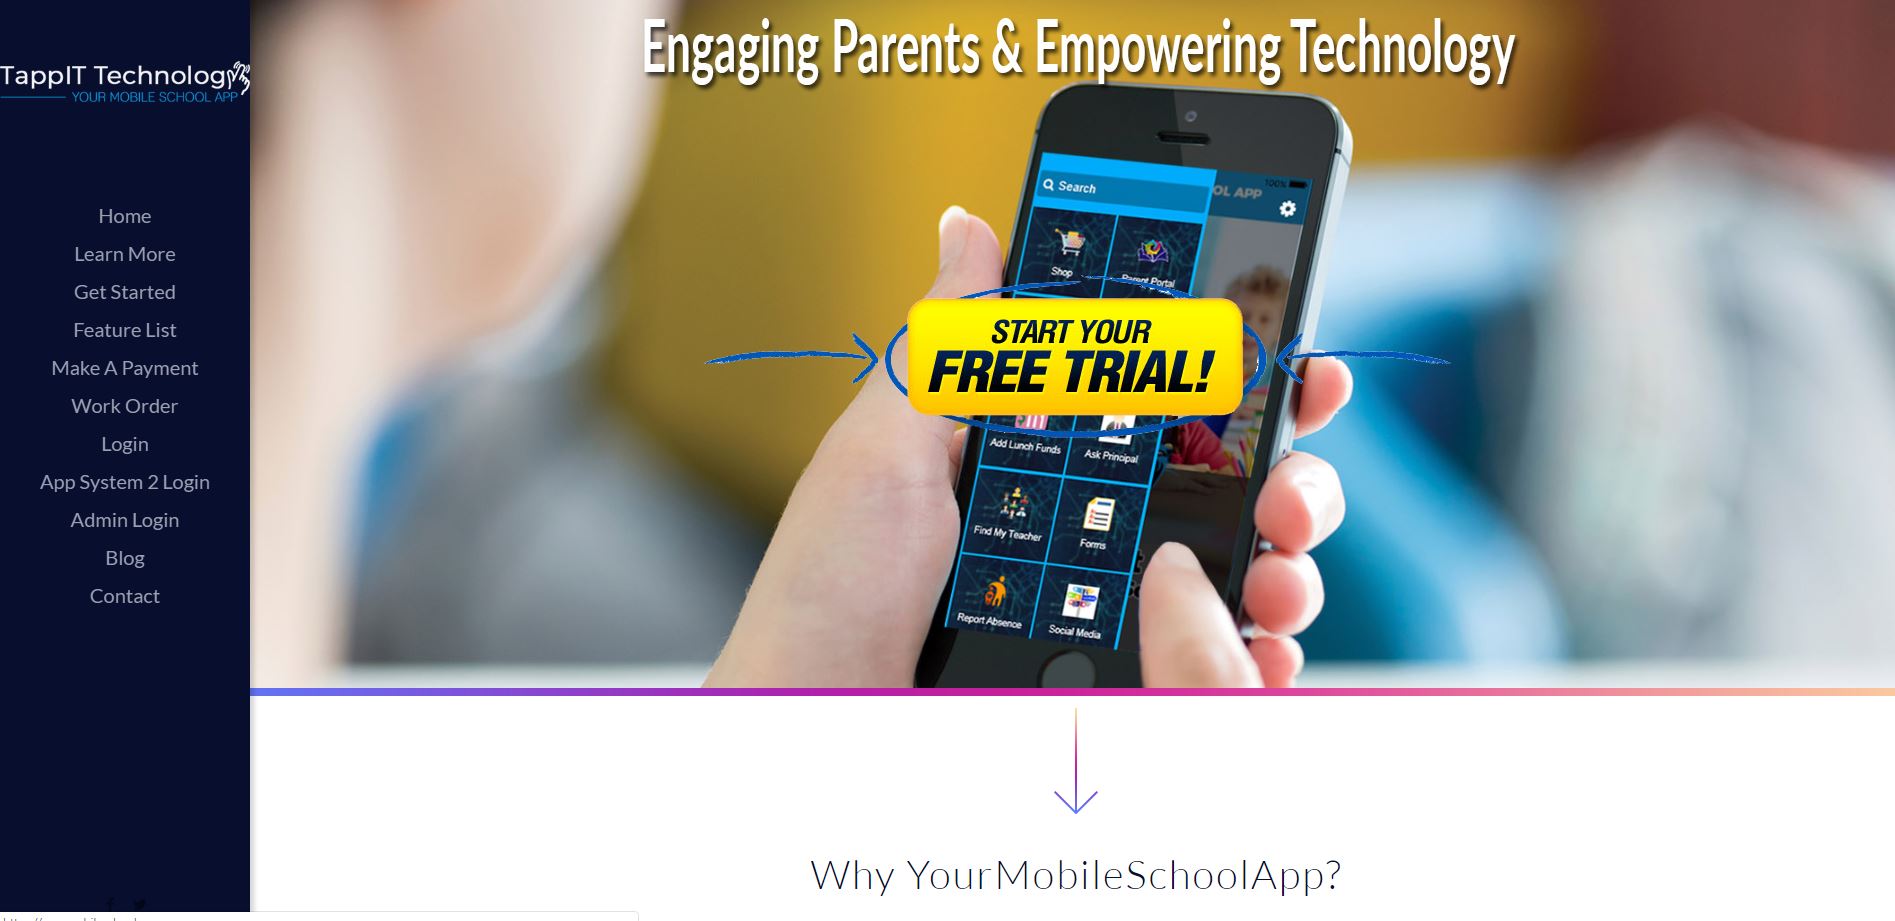 Your Mobile School App